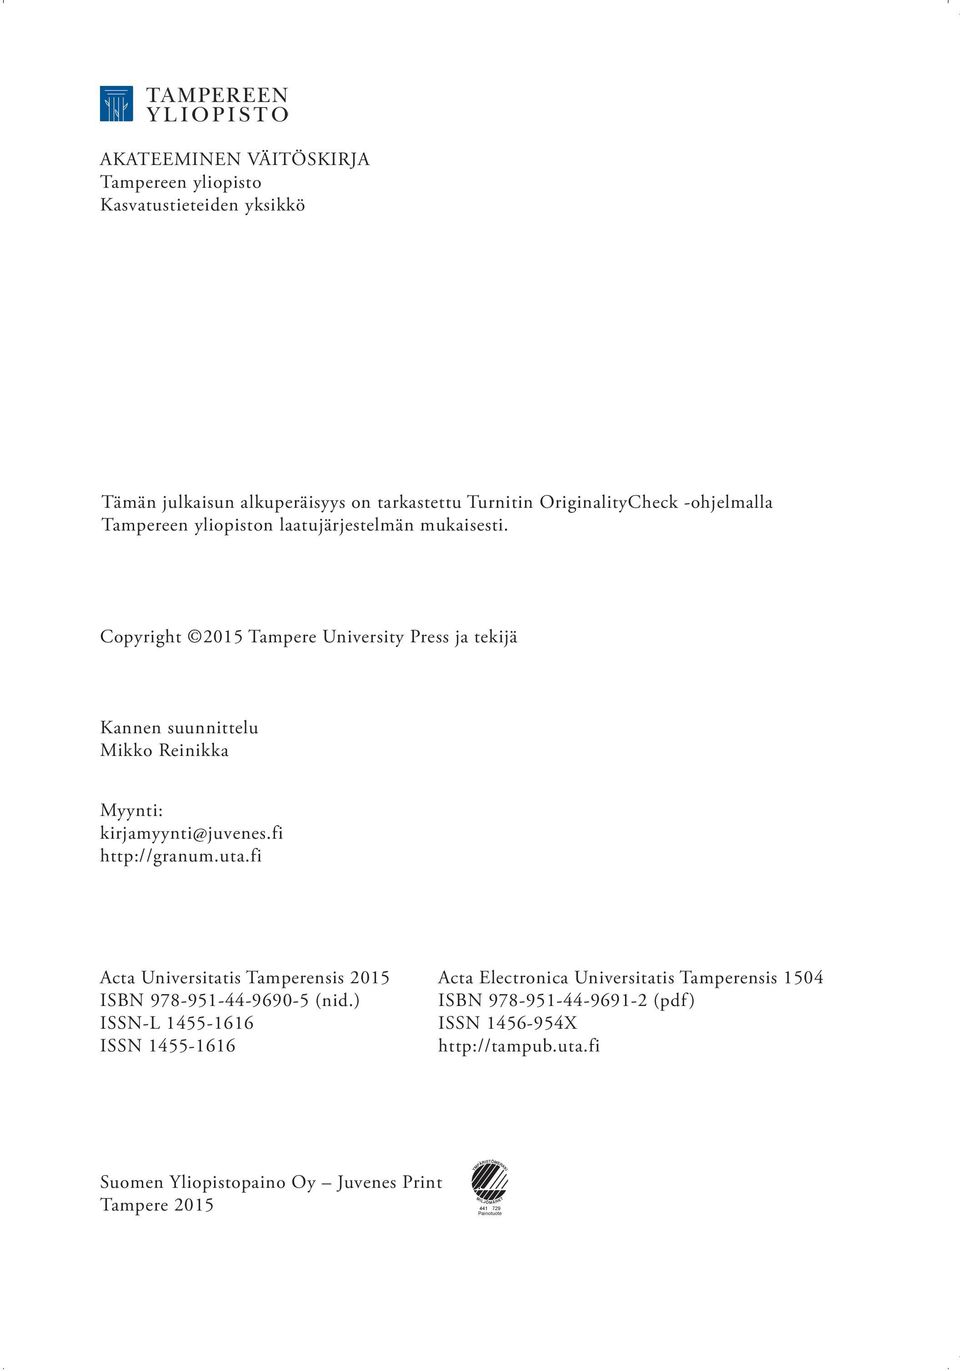 Copyright 2015 Tampere University Press ja tekijä Kannen suunnittelu Mikko Reinikka Myynti: kirjamyynti@juvenes.fi http://granum.uta.